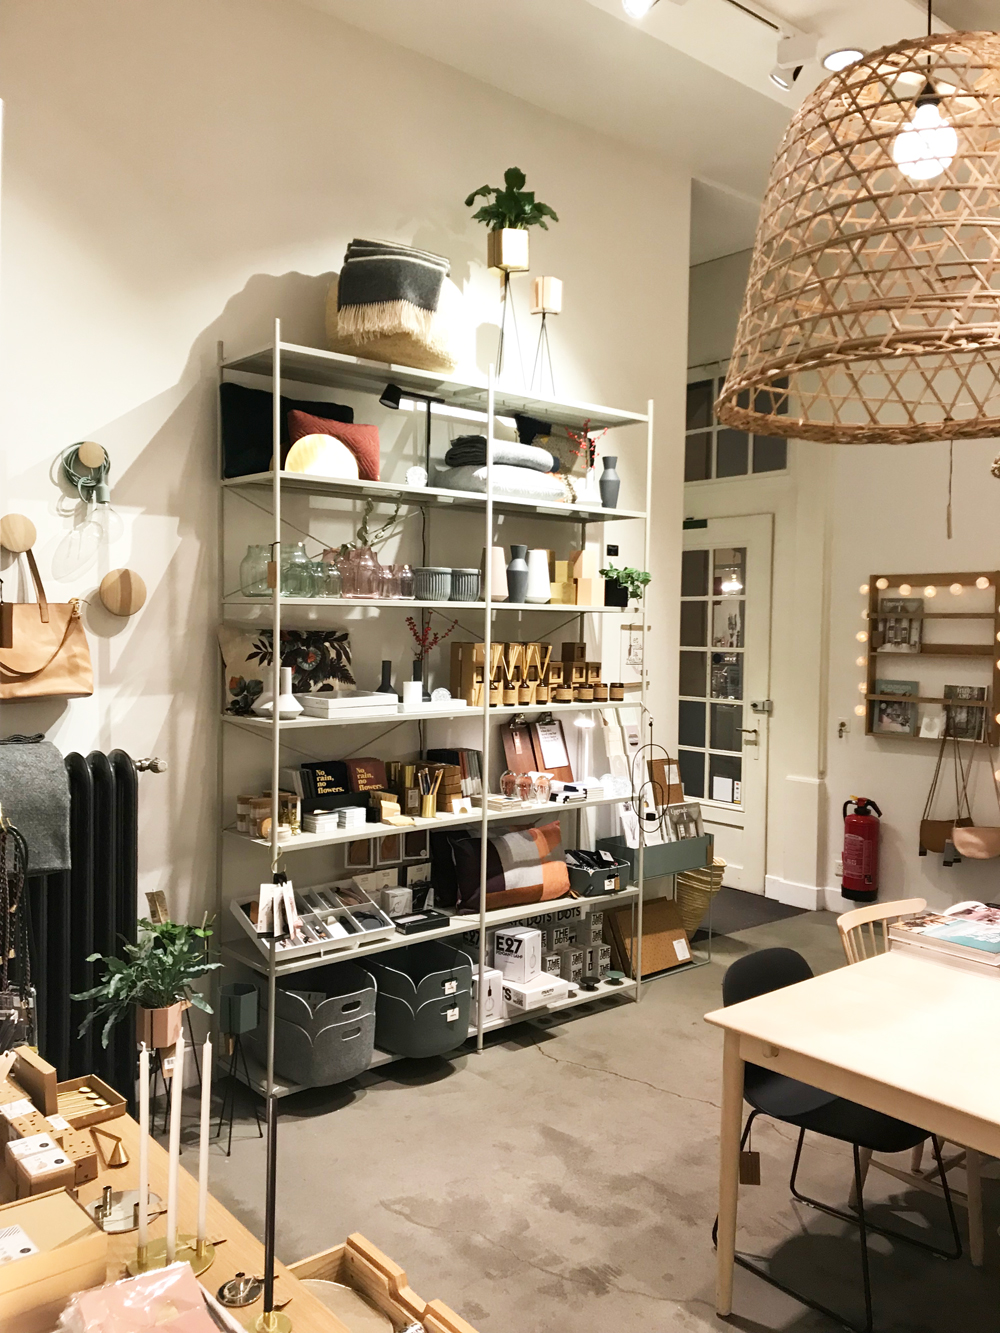 HEJKØH nennt sich das neue Lifestyle-Mekka in Basel, welches die beiden Begründerinnen Daniela Witzig und Claudine Kuhn-Köhler mit «ein bisschen Concept Store, ein bisschen Café, ein bisschen Boutique, ein bisschen Wohnzimmer und ein bisschen Atelier» umschreiben. 